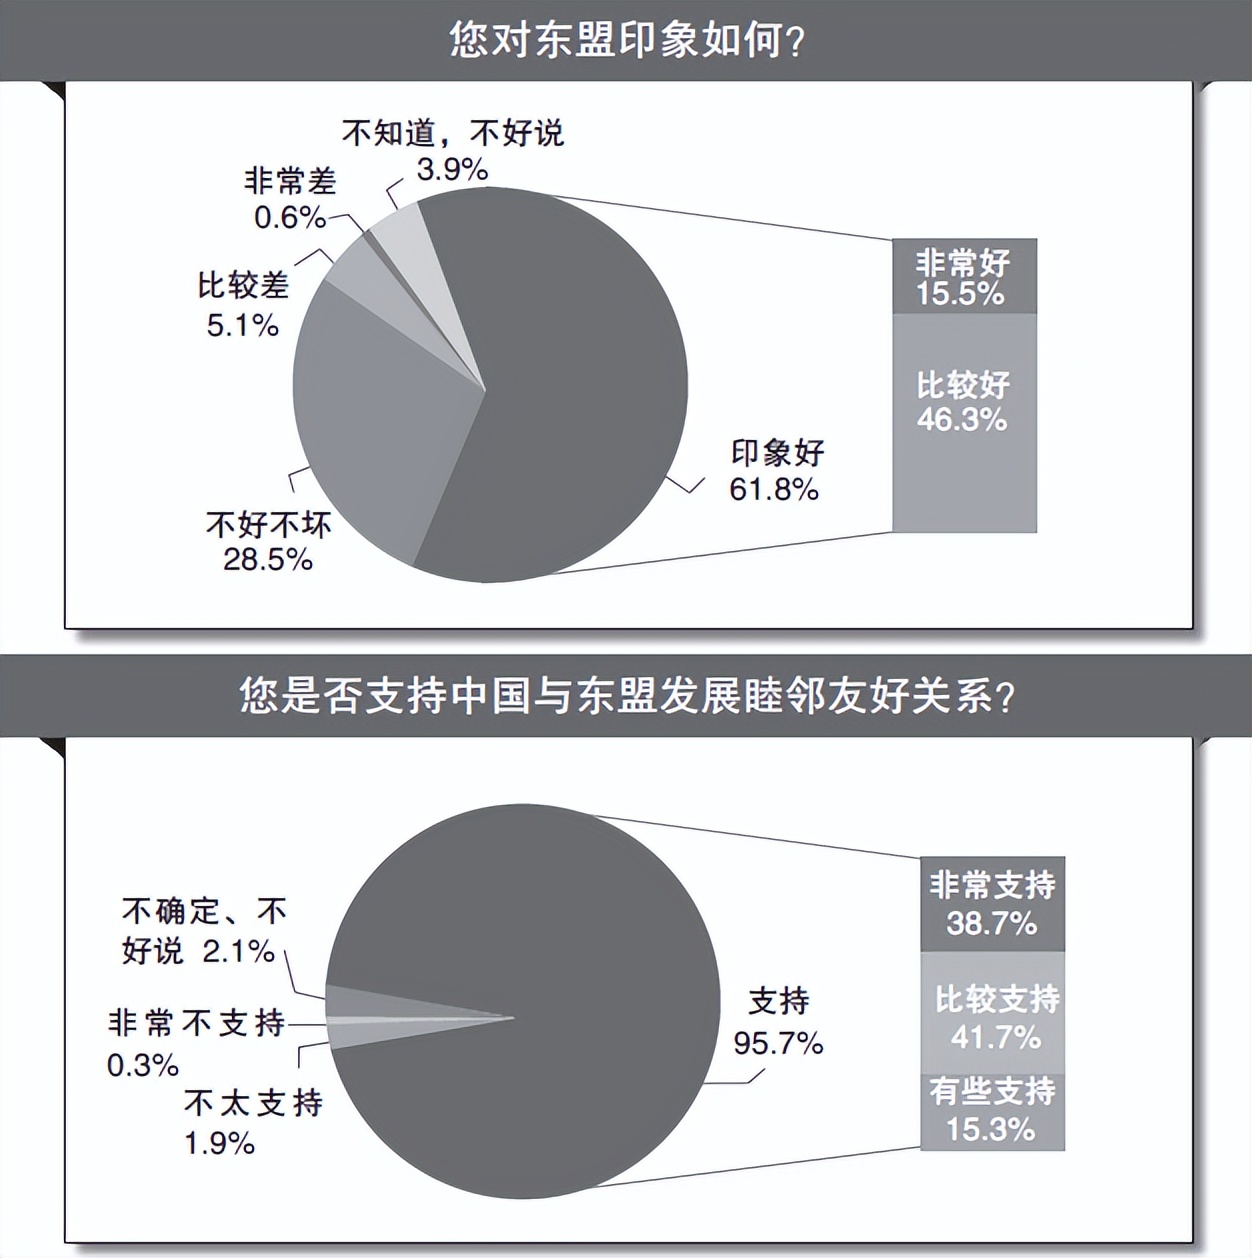 民调显示超九成受访者认为中国与东盟关系友好，外交部回应